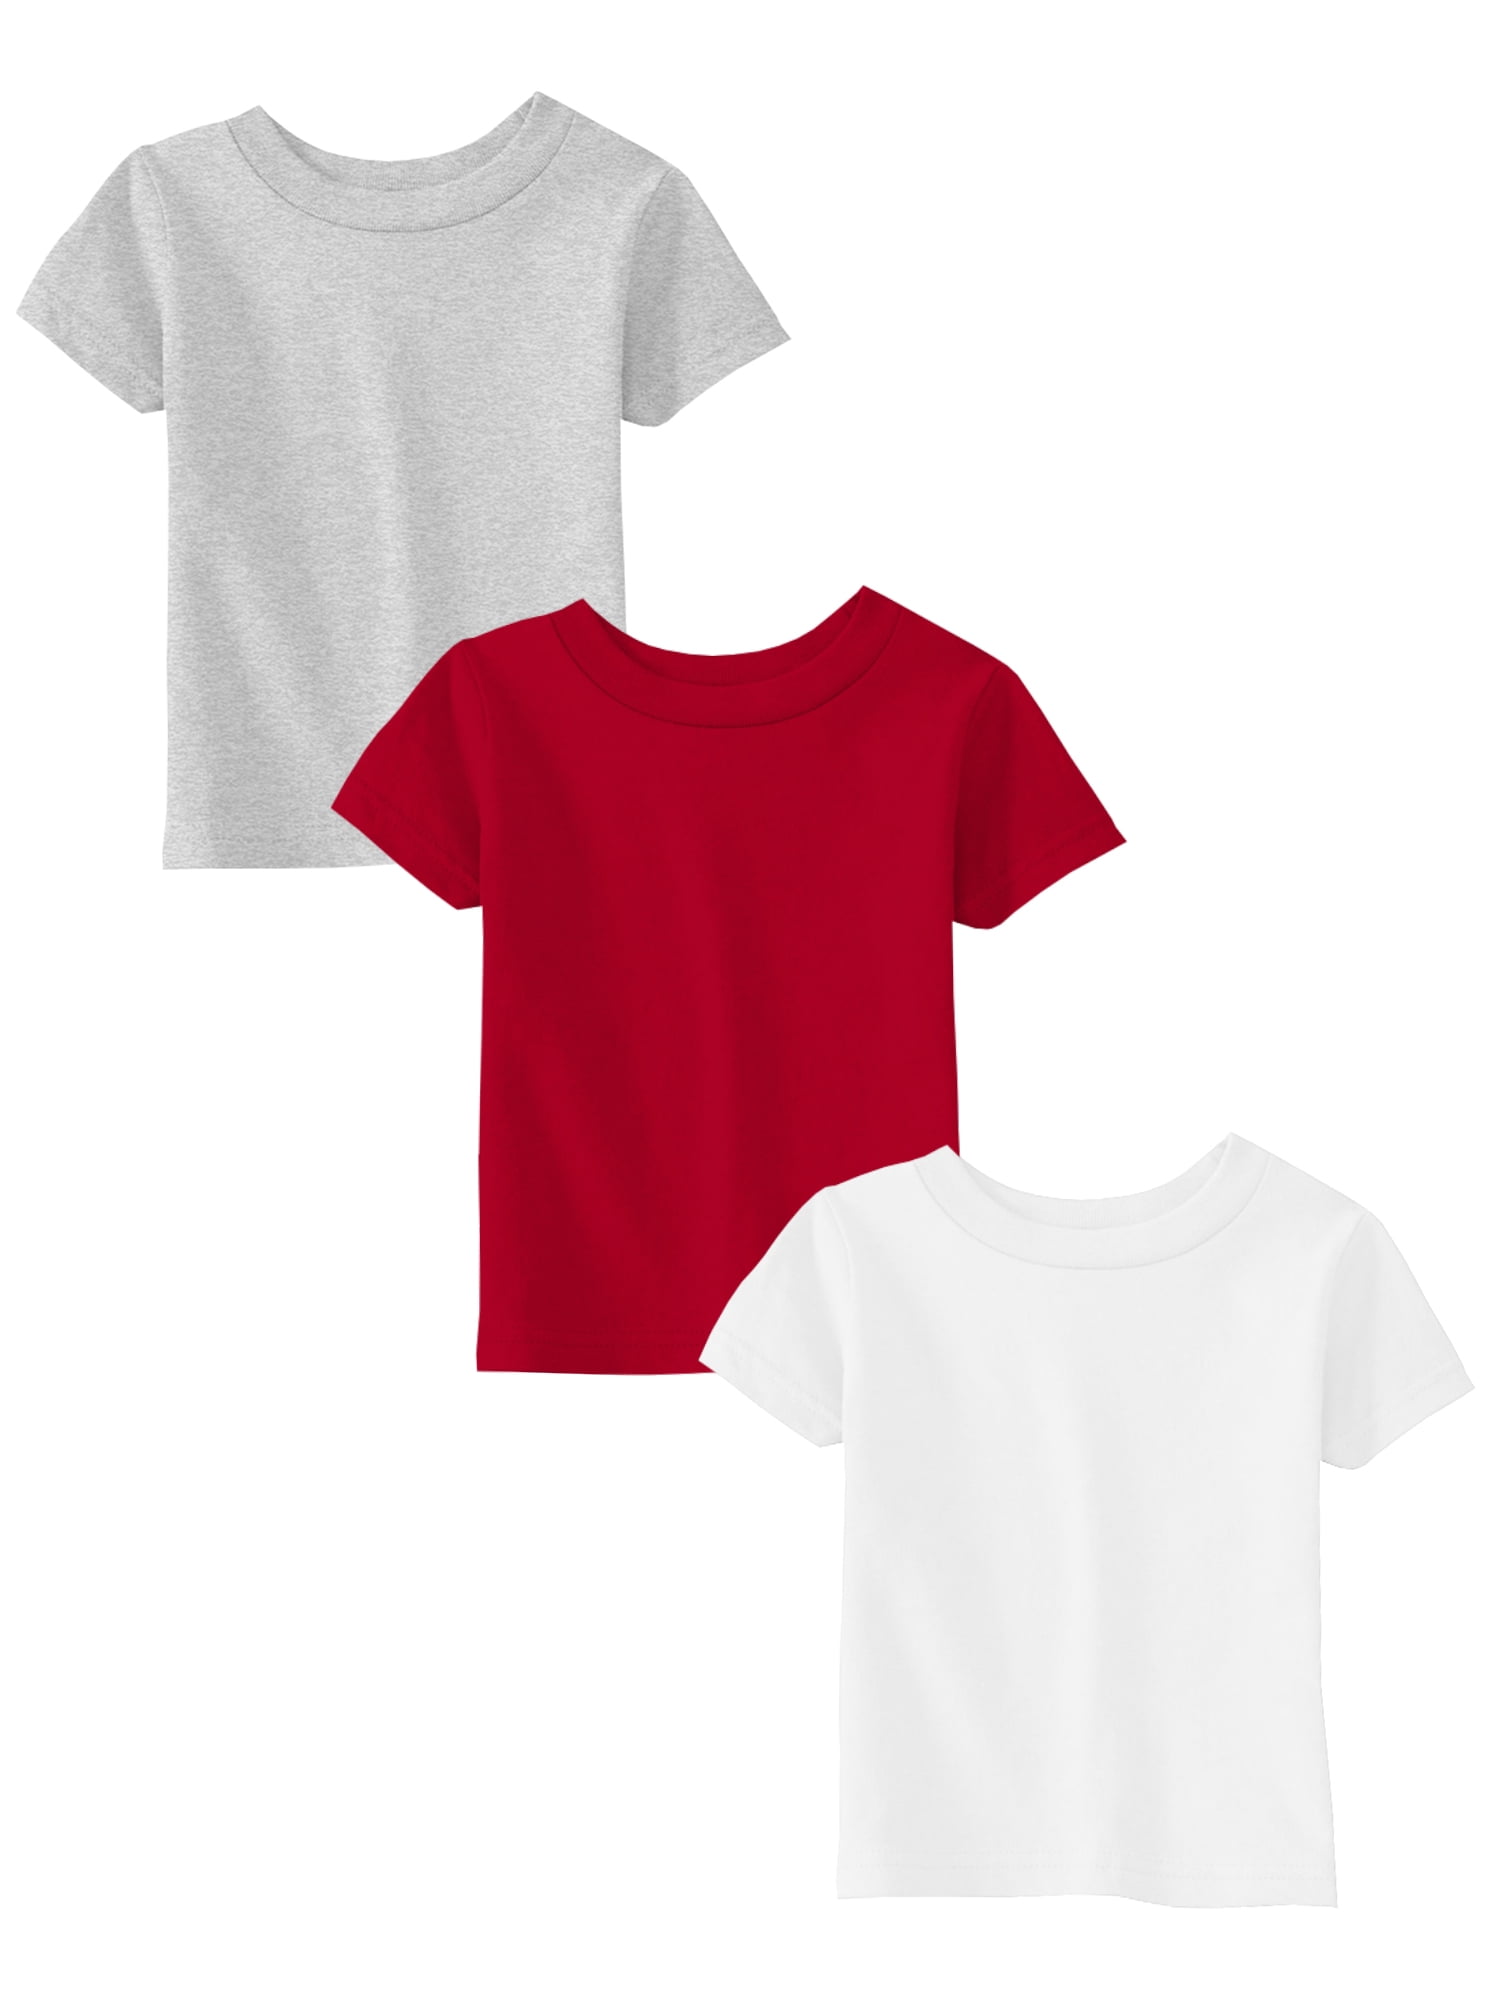 Awkward Styles Girls Shirts Toddler Shirt Grey White Red Shirts 3T ...